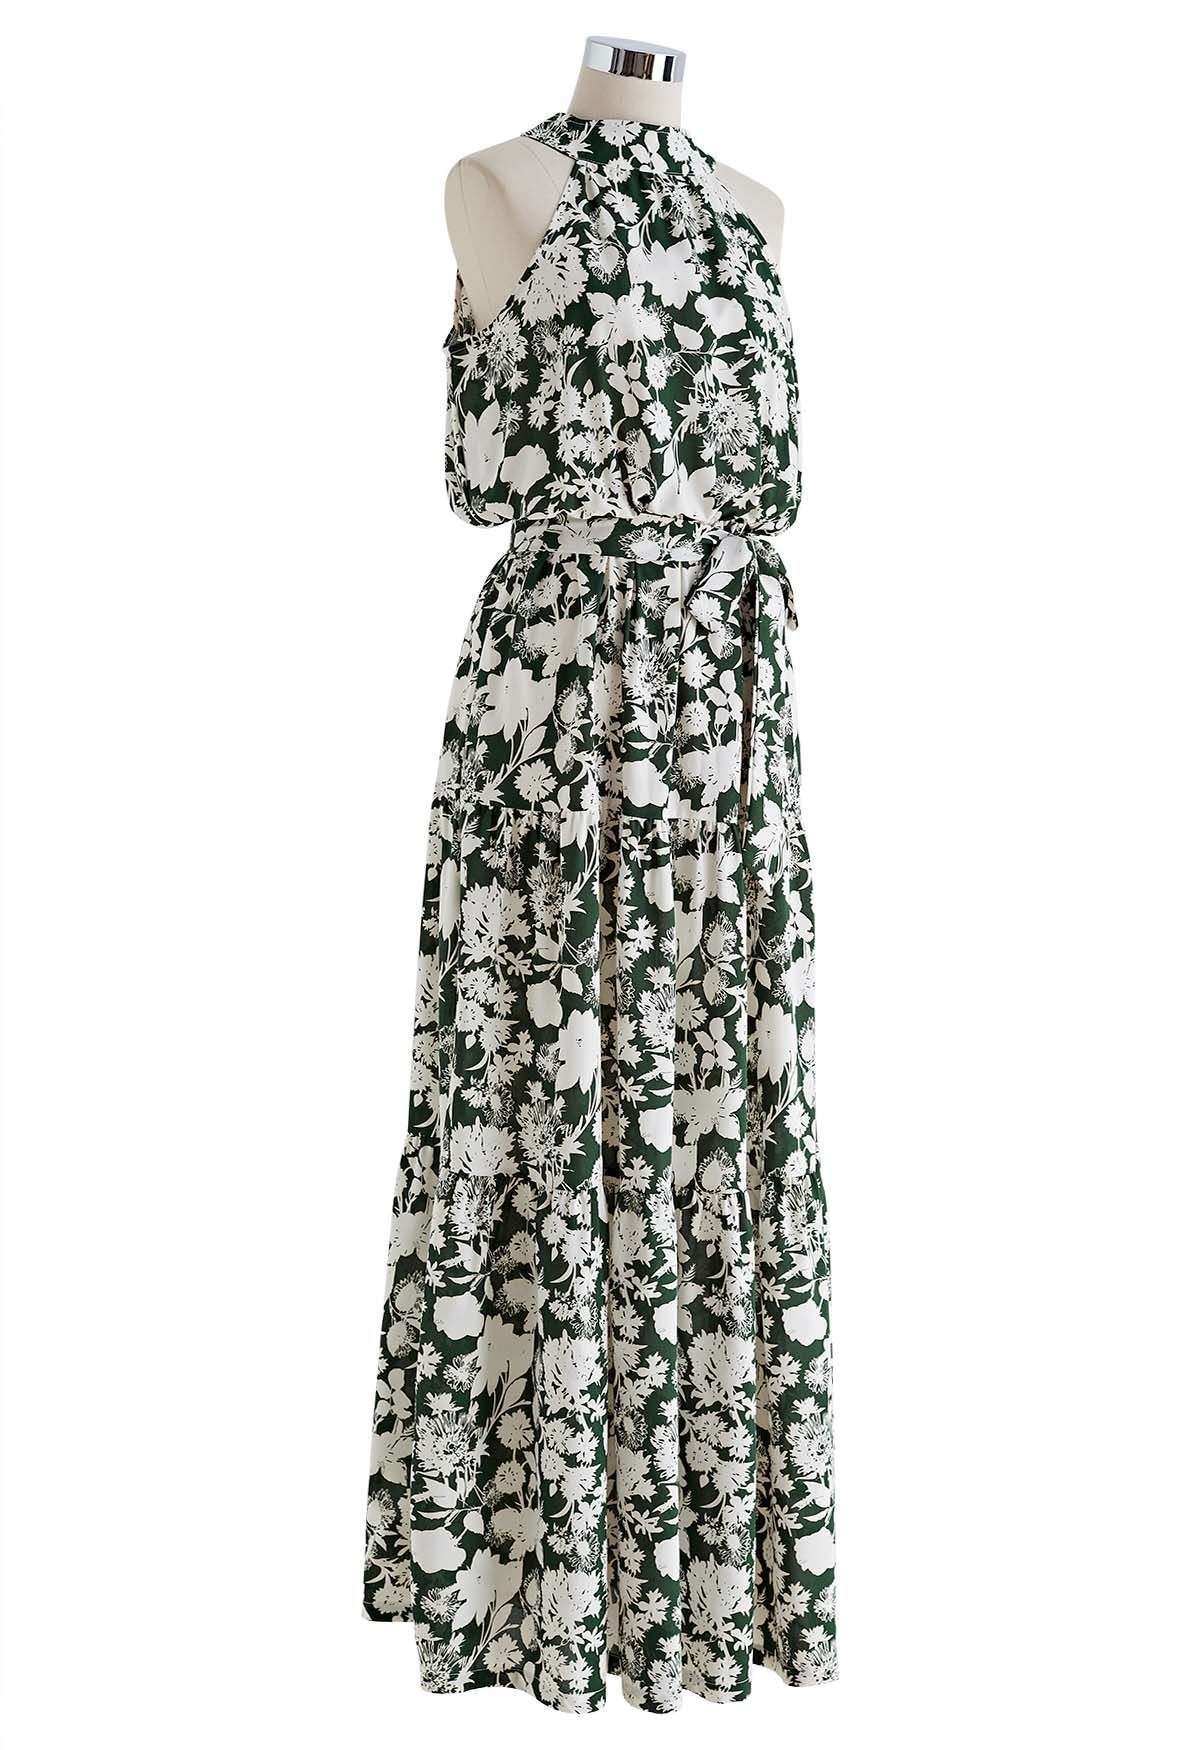 Halter Neck Tie Waist Maxi Dress in Green Floral